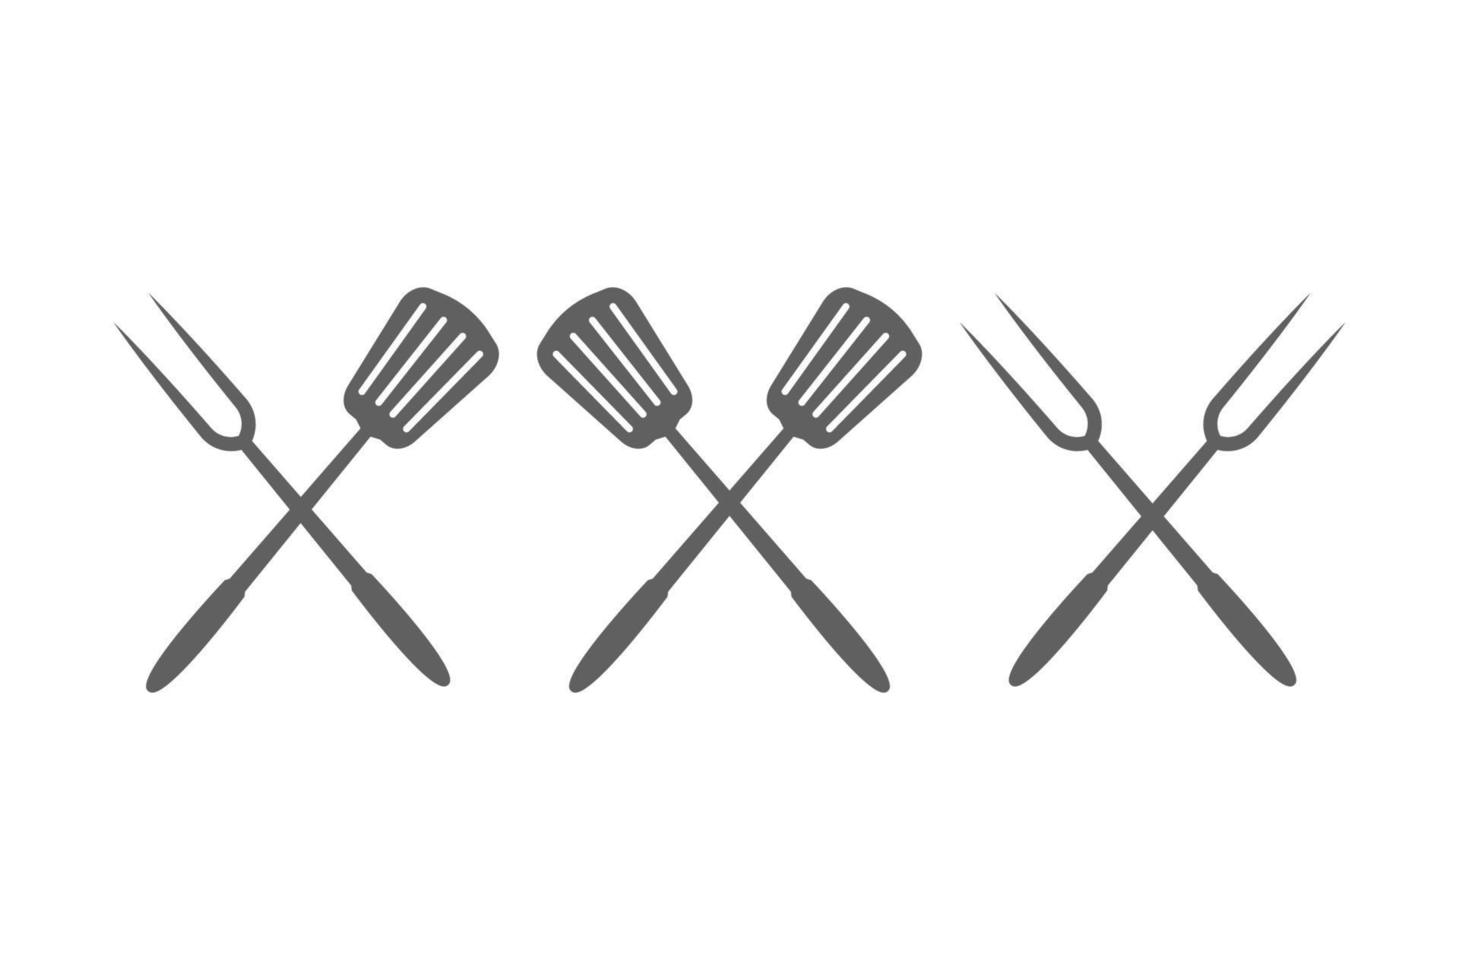 rustik retro vintage korsad gaffel och spatel för bbq grill logo design vektor